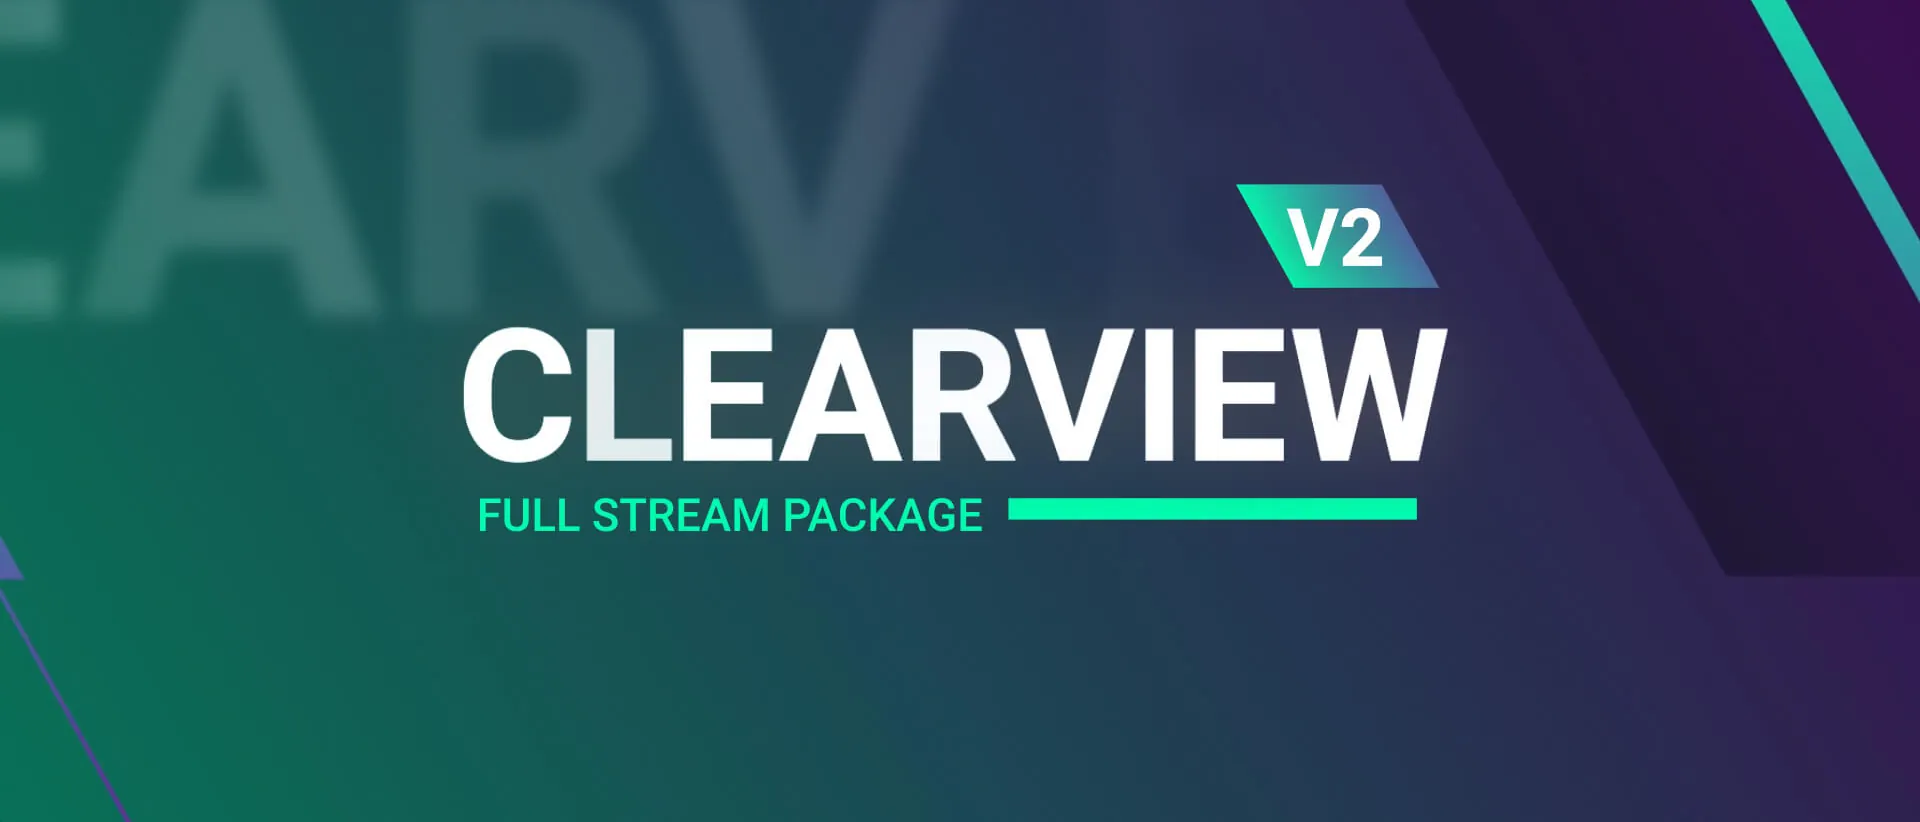 clearview v2 thumbnailB uai